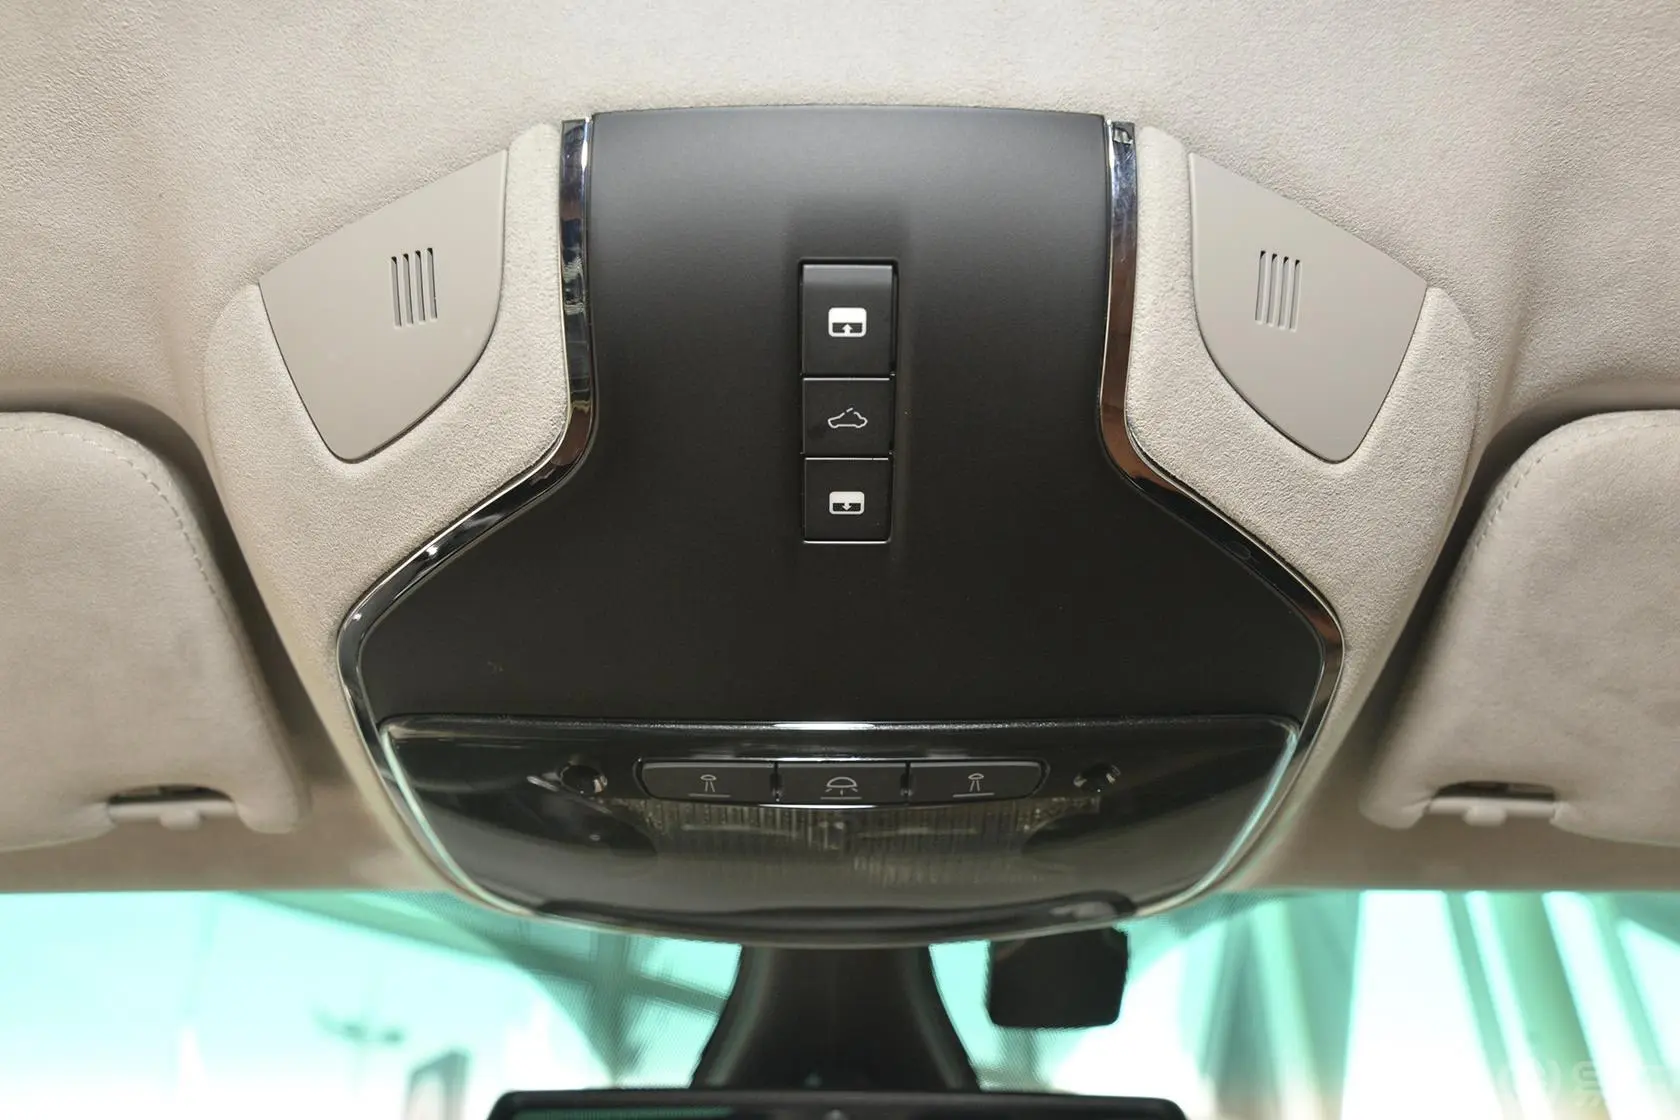 Quattroporte3.8T 标准型前排车顶中央控制区